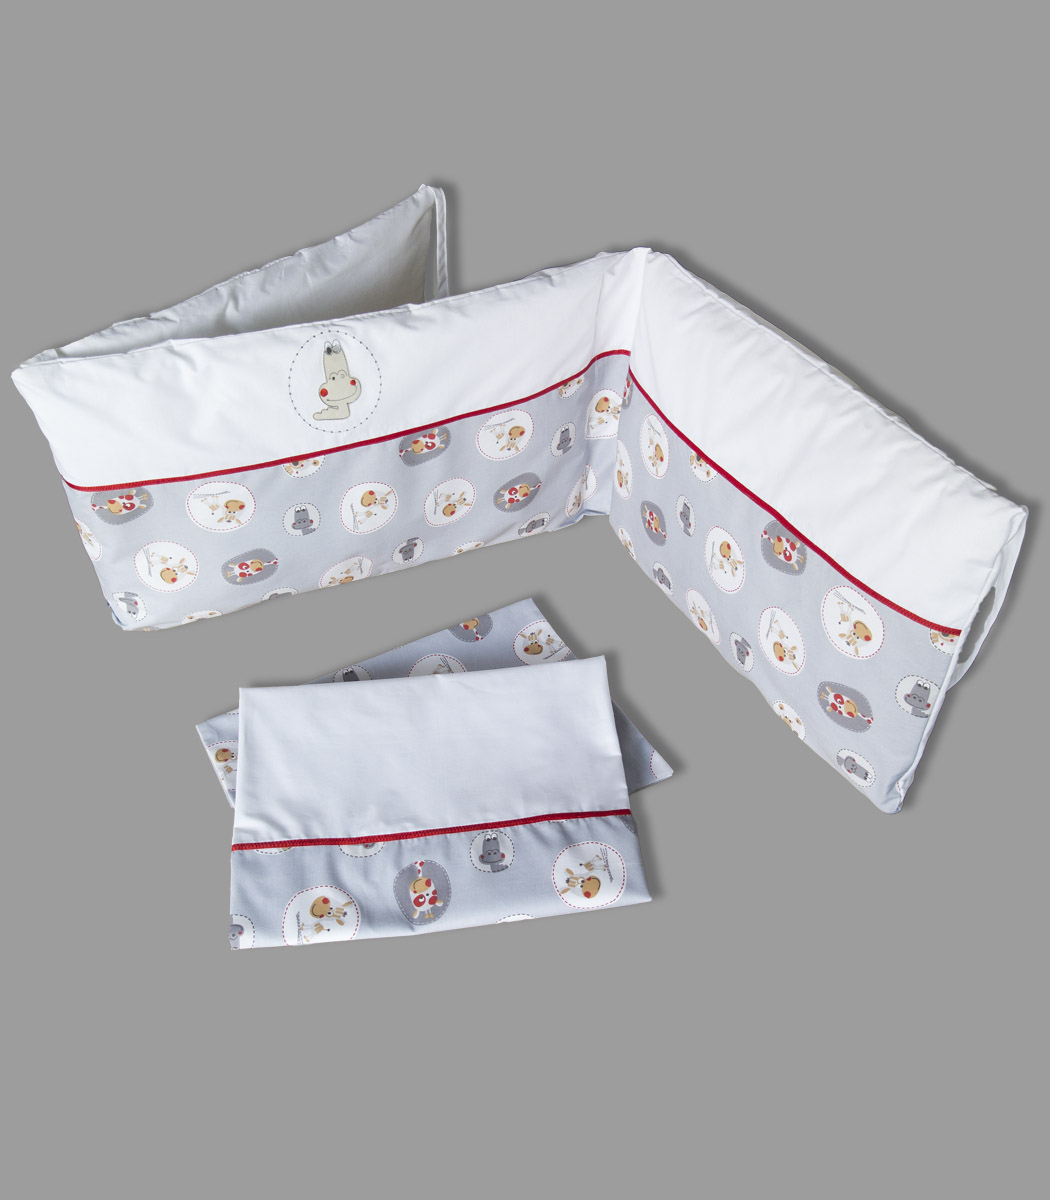 Komplet pościeli do łóżeczka z ochraniaczem niemowlęcym. Pościel niemowlęca oraz ochraniacz do łóżeczka pasują zarówno na łóżeczko 140x70 cm jak i na 120x60 cm. Ochraniacz posiada funkcję "łatwego prania" - wypełnienie można wyjąc z poszewki i prać oddzielnie. Skład: 100% bawełna, wypełnienie ochraniacza: włókno poliestrowe. Wymiary ochraniacza: długość: ok.170 cm, wysokość: ok.40 cm. Produkt wykonany w całości w Polsce. Producent Pony Design.